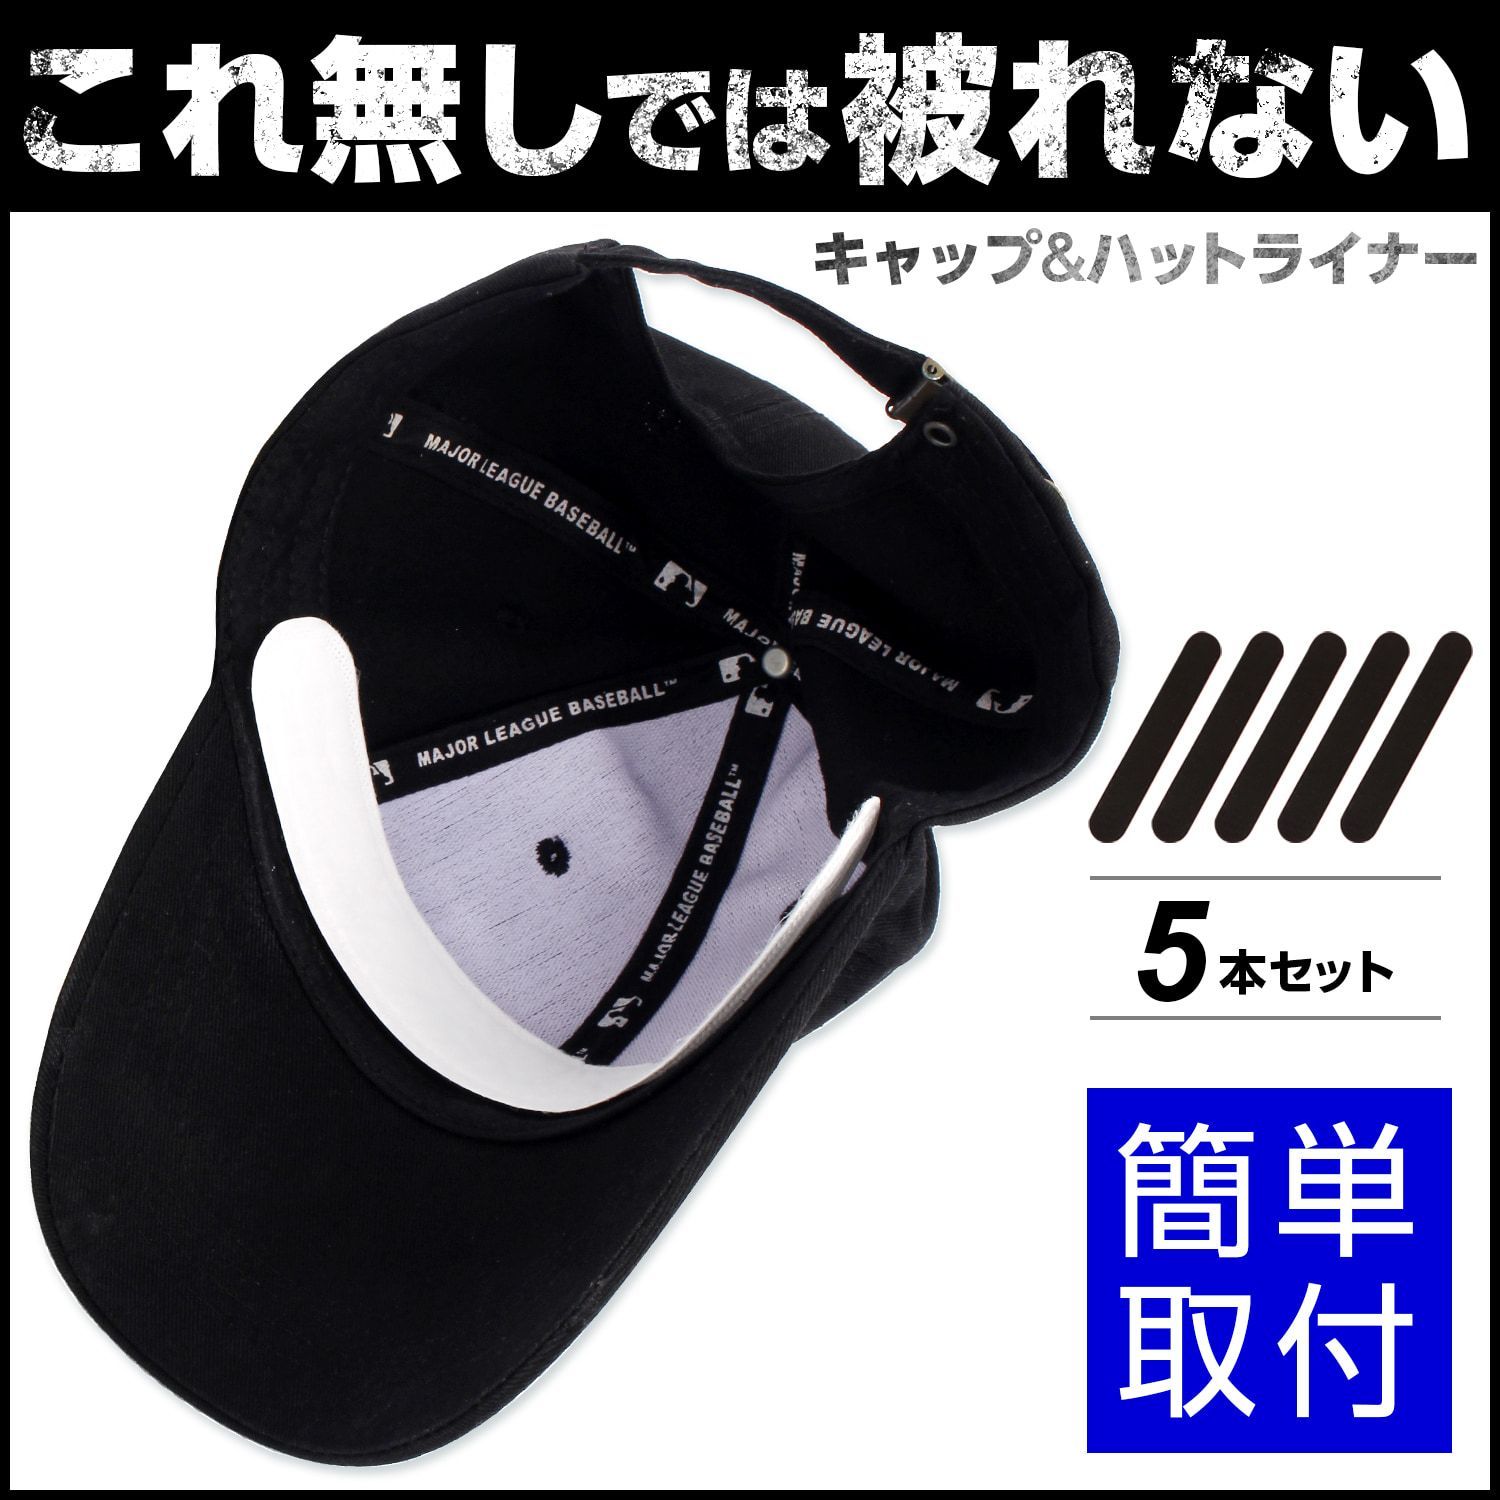 買い保障できる 制帽専用汚れ防止ライナー 制帽専用 制帽 専用 対応 汚れ防止ライナー ブラック